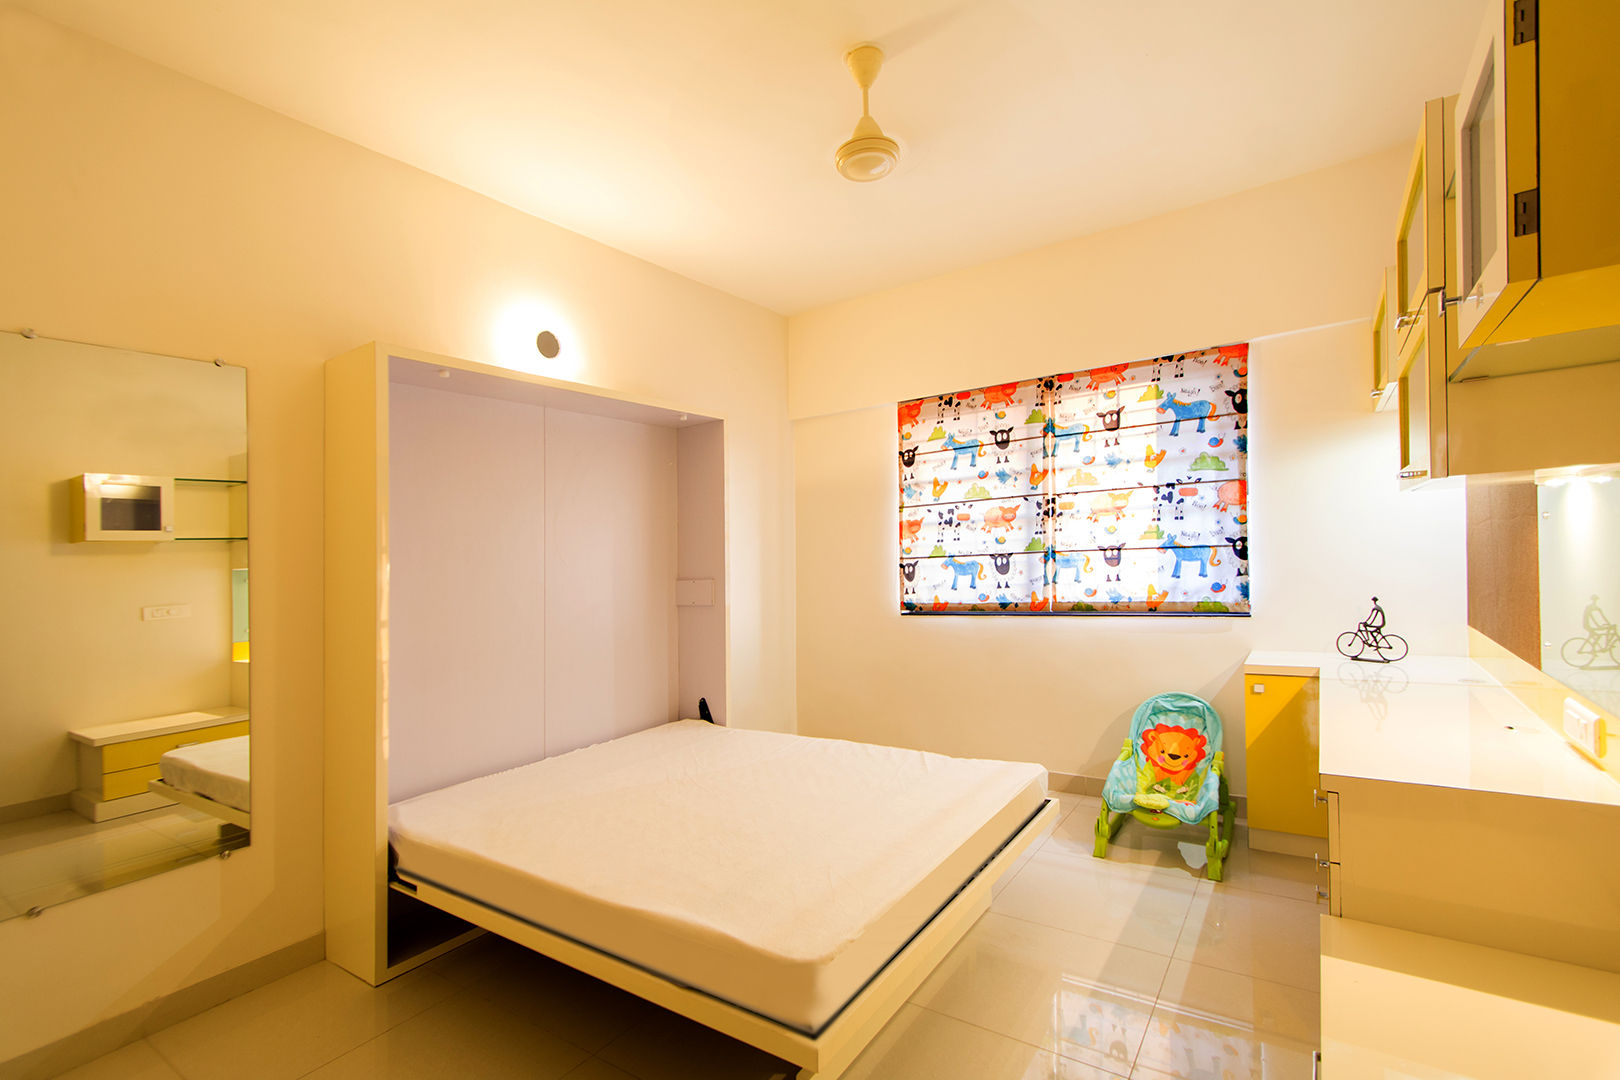 Daughters Room Navmiti Designs Nursery/kid’s room Beds & cribs